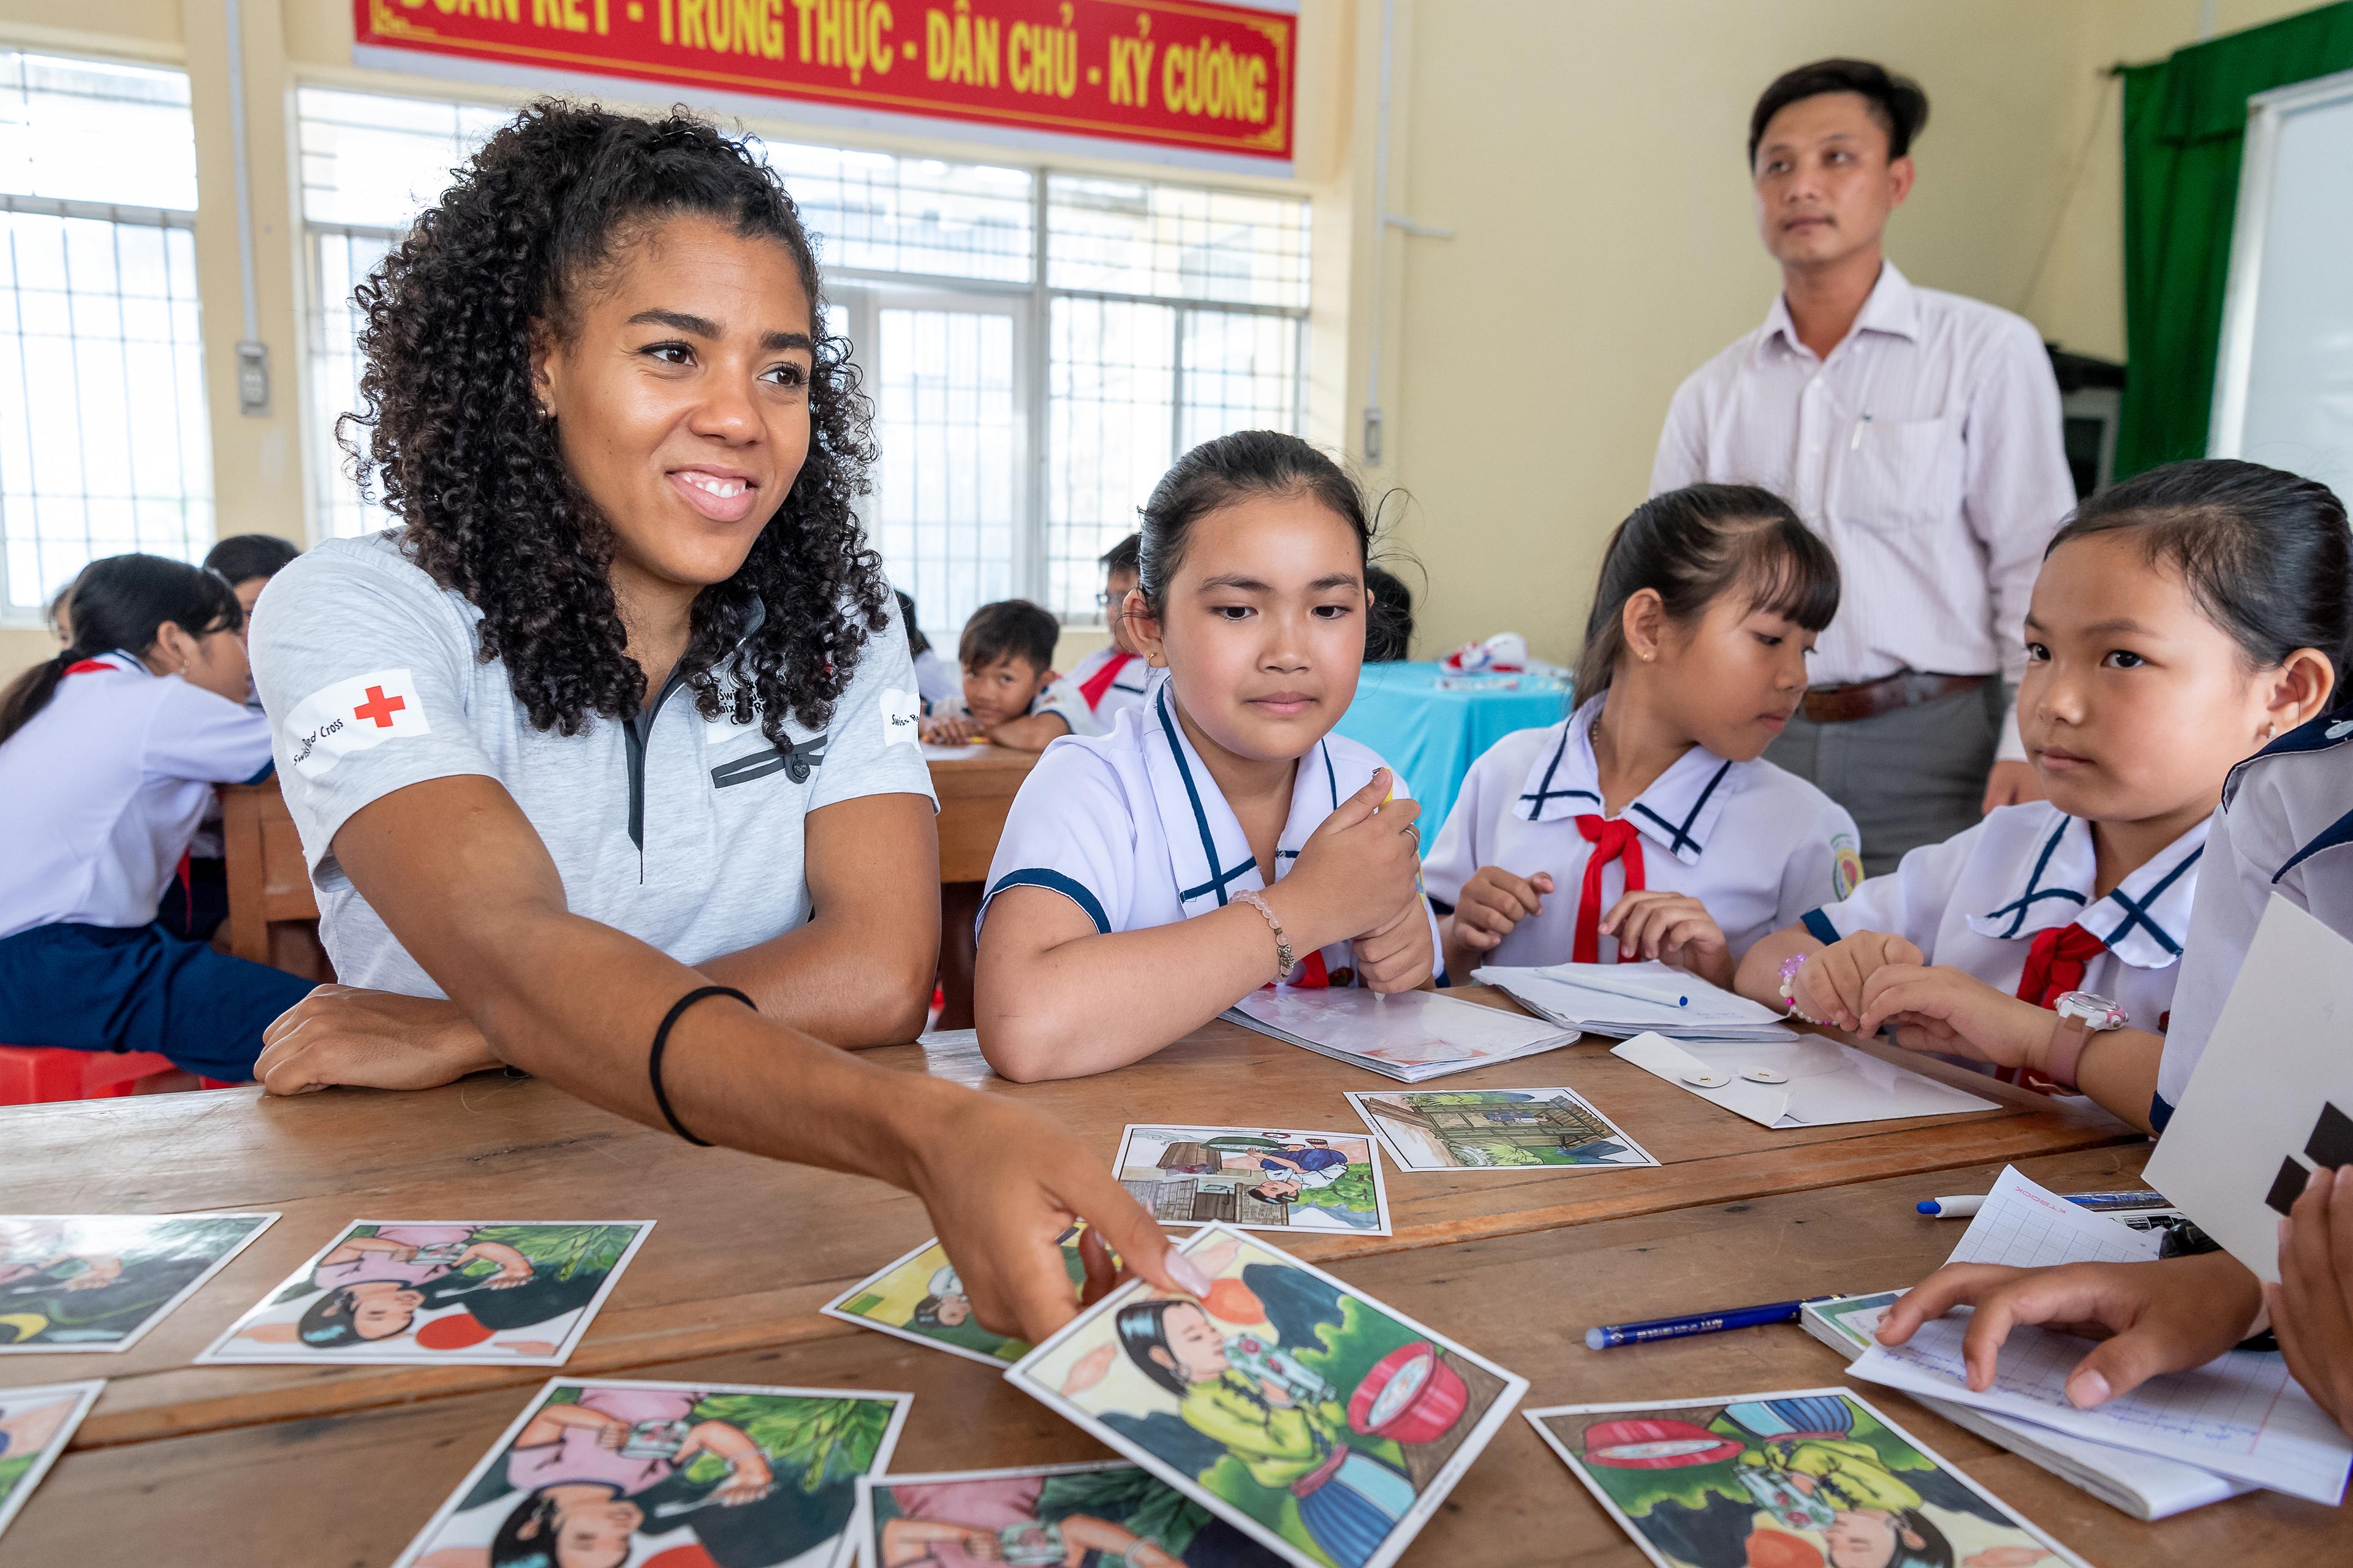 Mujinga Kambundji, sitzt mit Schülerinnen der Schule in Khan Binh Tay an einem Tisch und schaut sich mit ihnen Karten an.